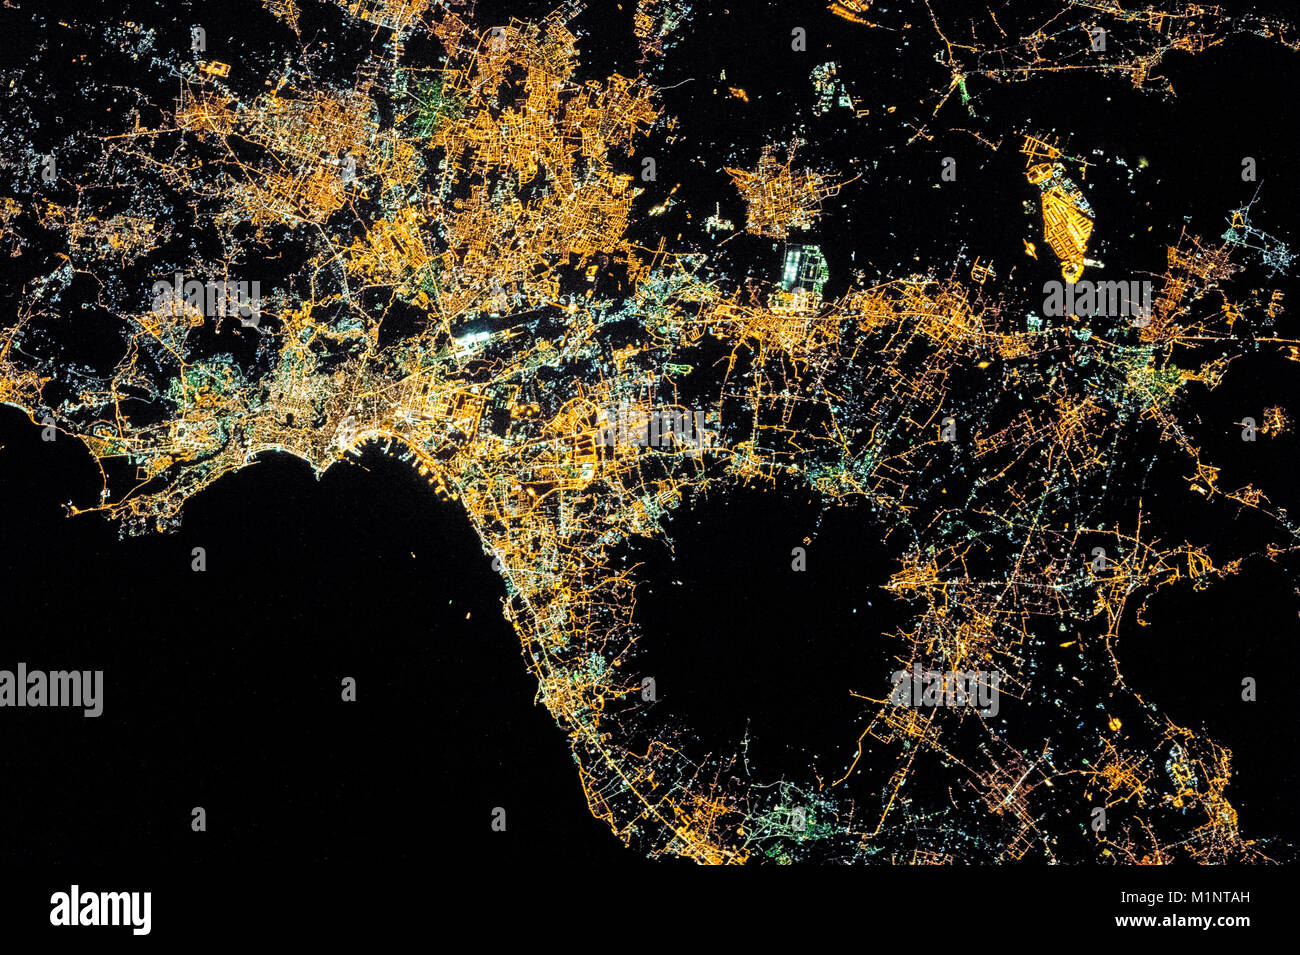 La città di Napoli in Italia. Vista notturna della città di notte dallo spazio. Punto di vista dalla Stazione Spaziale Internazionale (ISS). Questo elementi di immagine fu Foto Stock